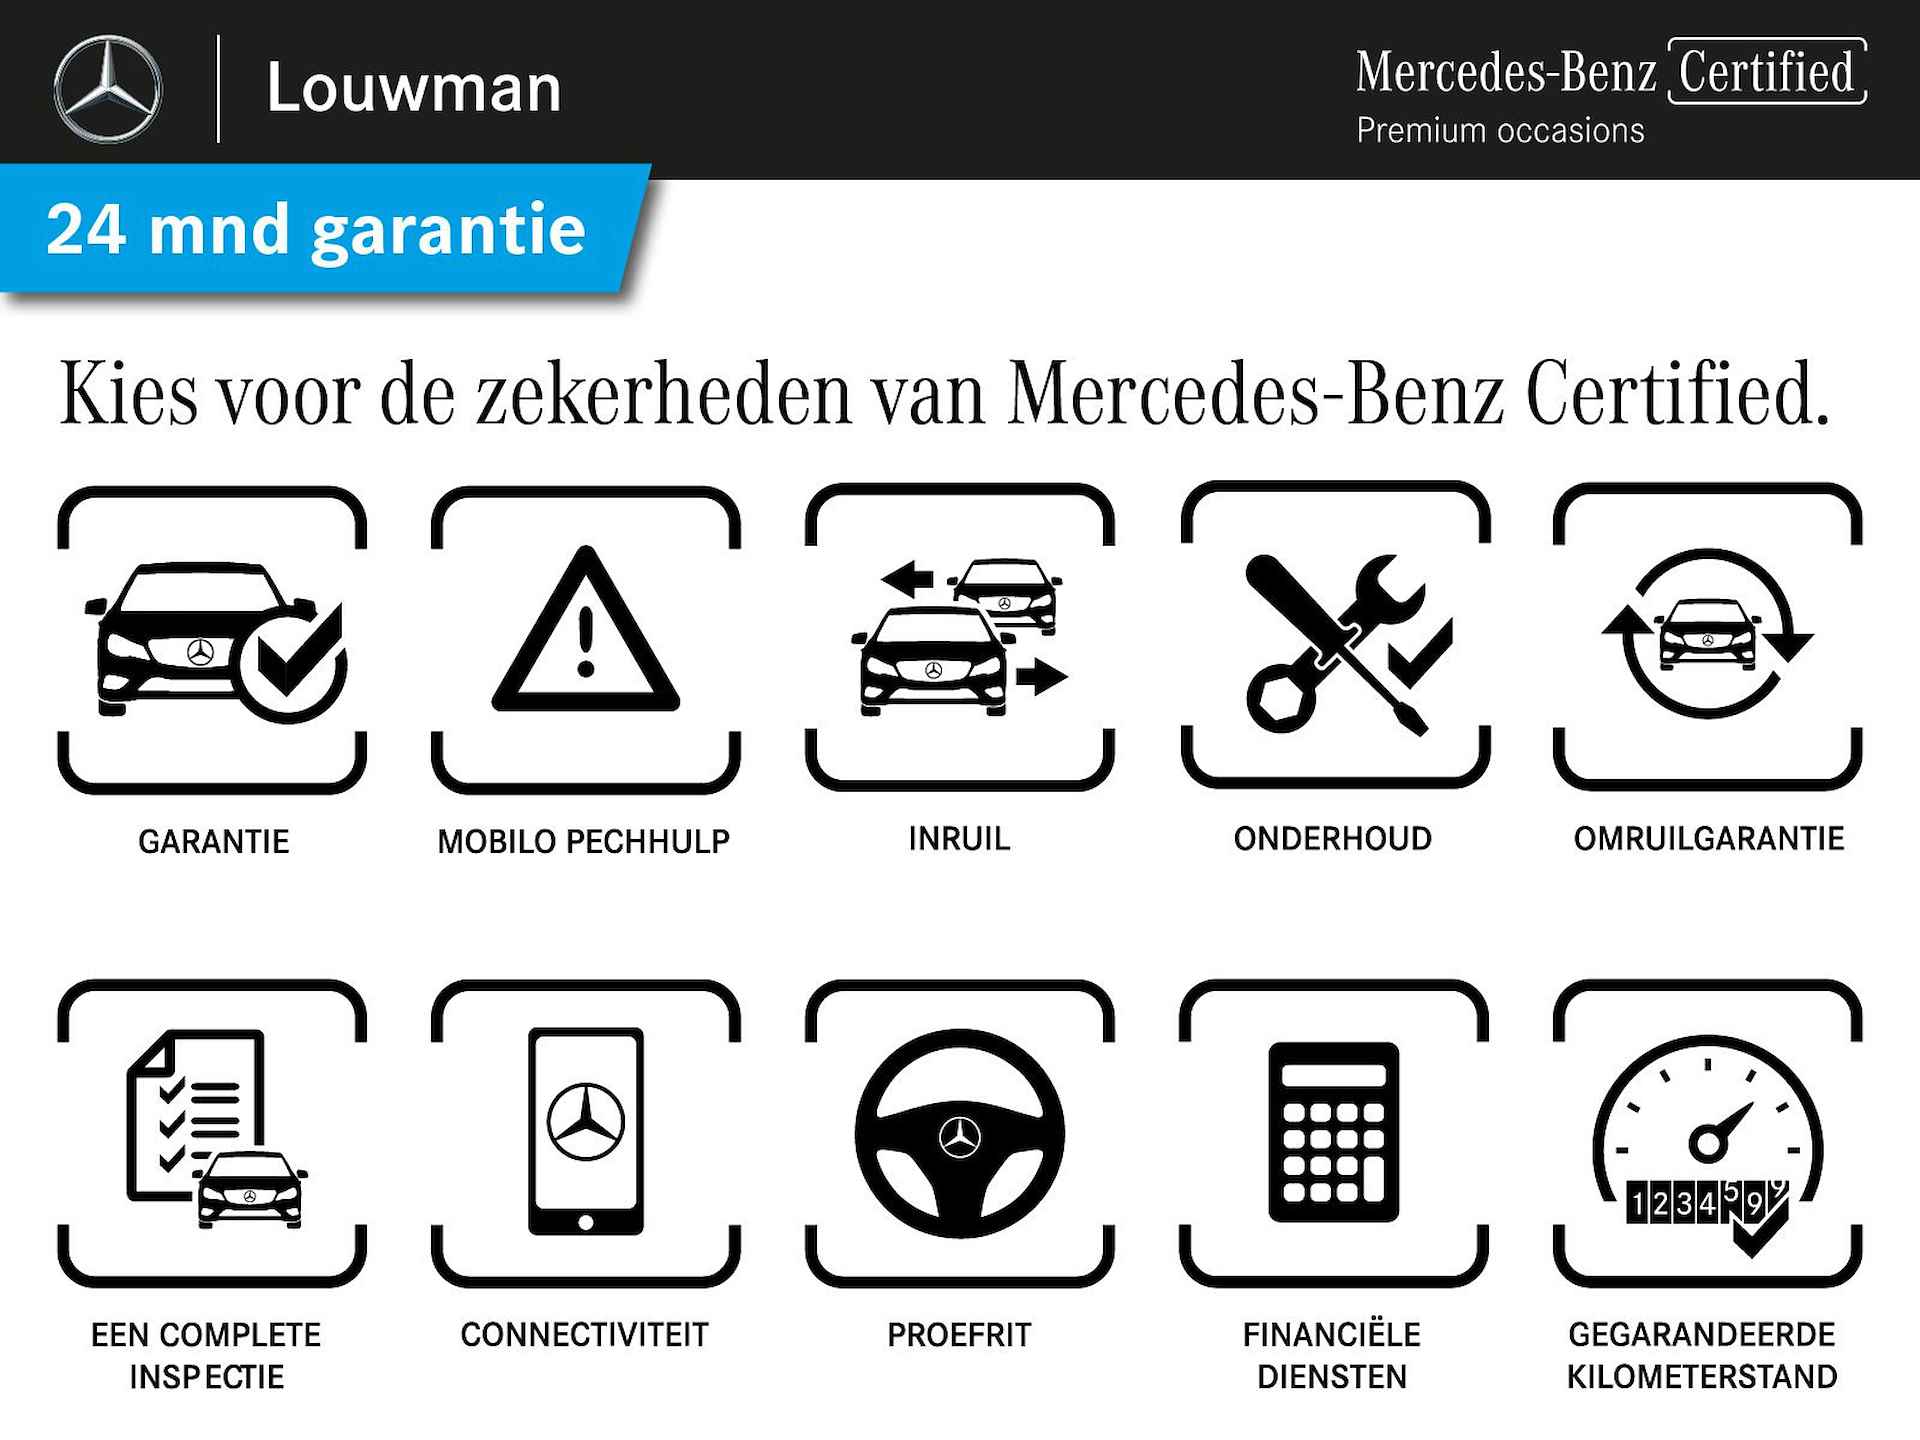 Mercedes-Benz GLC Coupé 63 S AMG 4MATIC+ Premium Plus | V8 | 510 pk | Keramische remmen | AMG performance-stoelen | Performance pakket | Inclusief 24 maanden Mercedes-Benz Certified garantie voor Europa. - 48/48